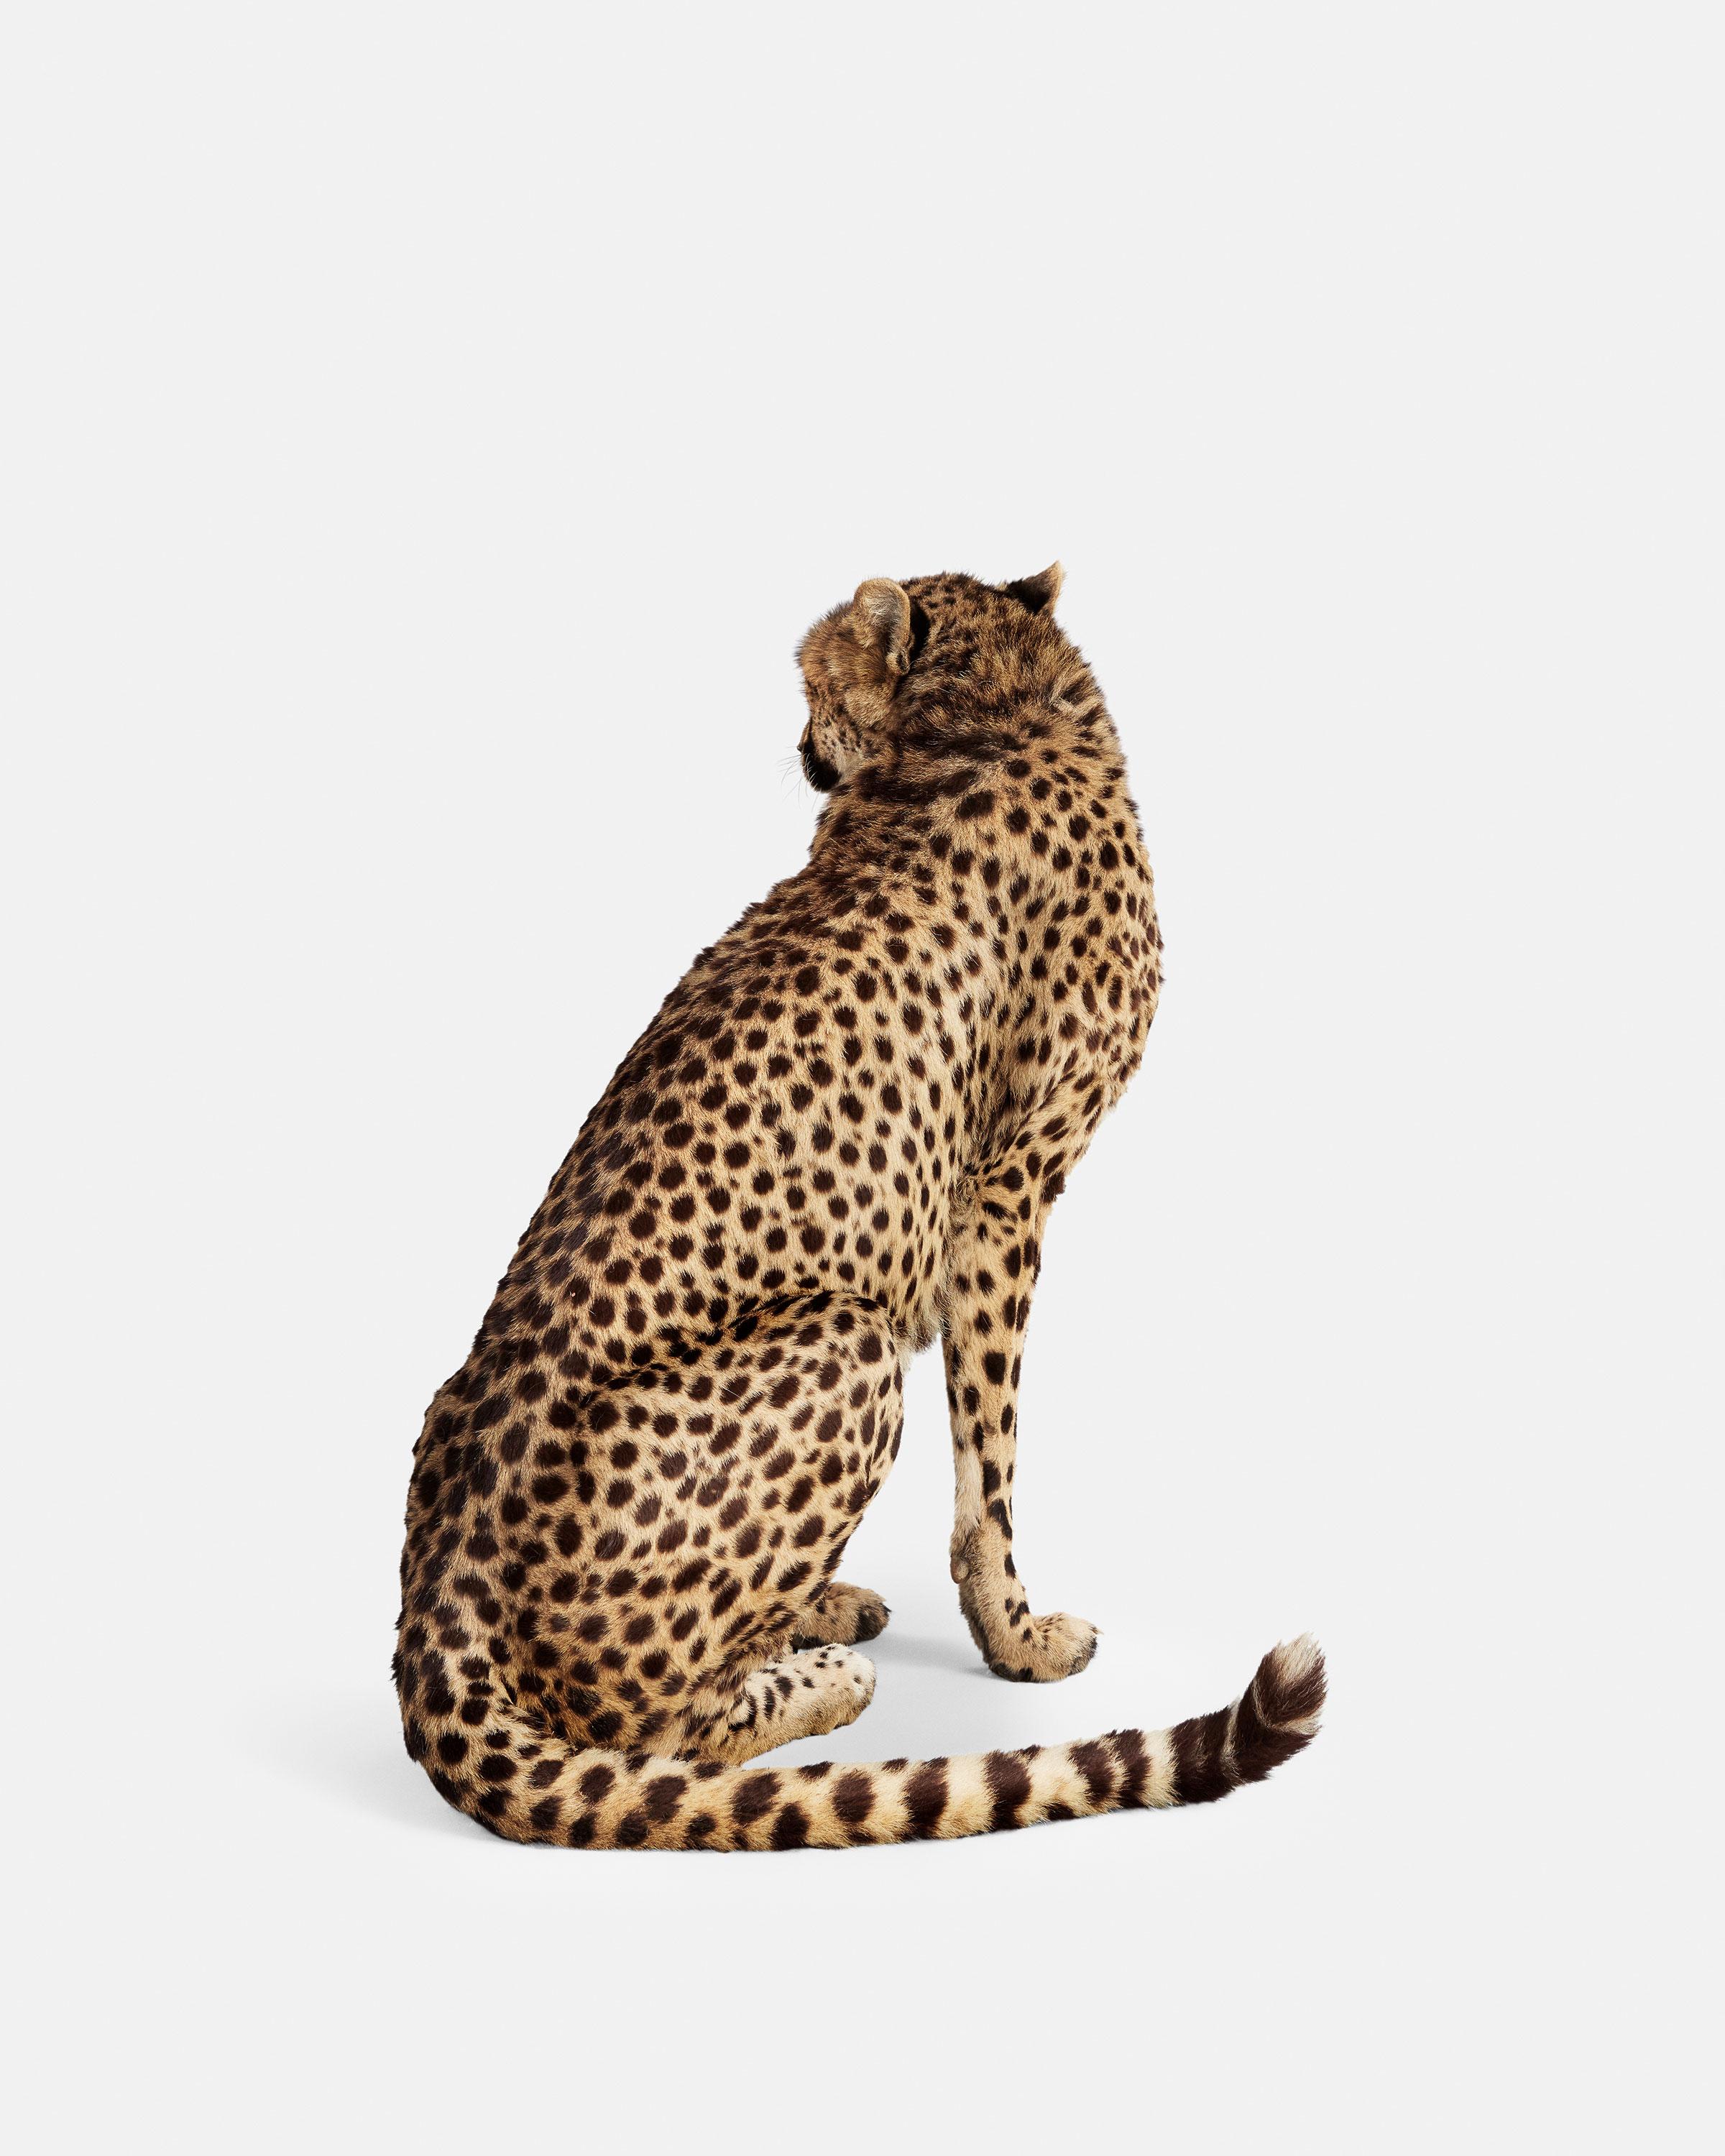 Randal Ford Color Photograph - Cheetah No. 2 (60" x 48")